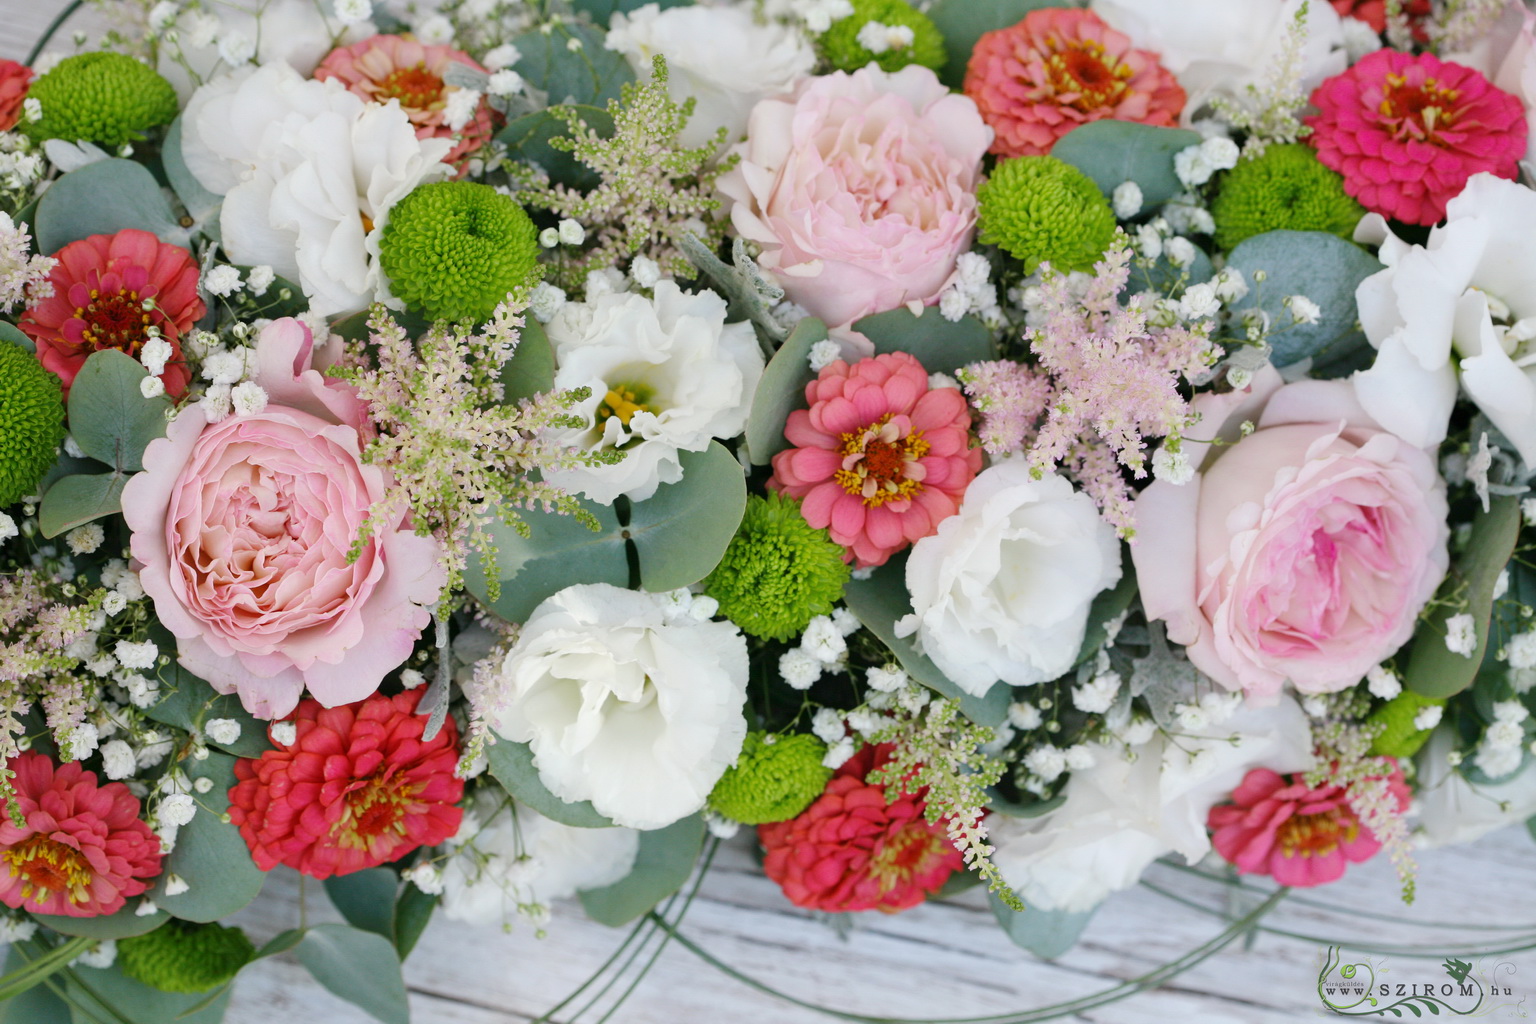 Főasztaldísz Mókus Budapest (angol rózsa, liziantusz, krizantém, rézvirág, fehér, korall, barack, rózsaszín, zöld), esküvő